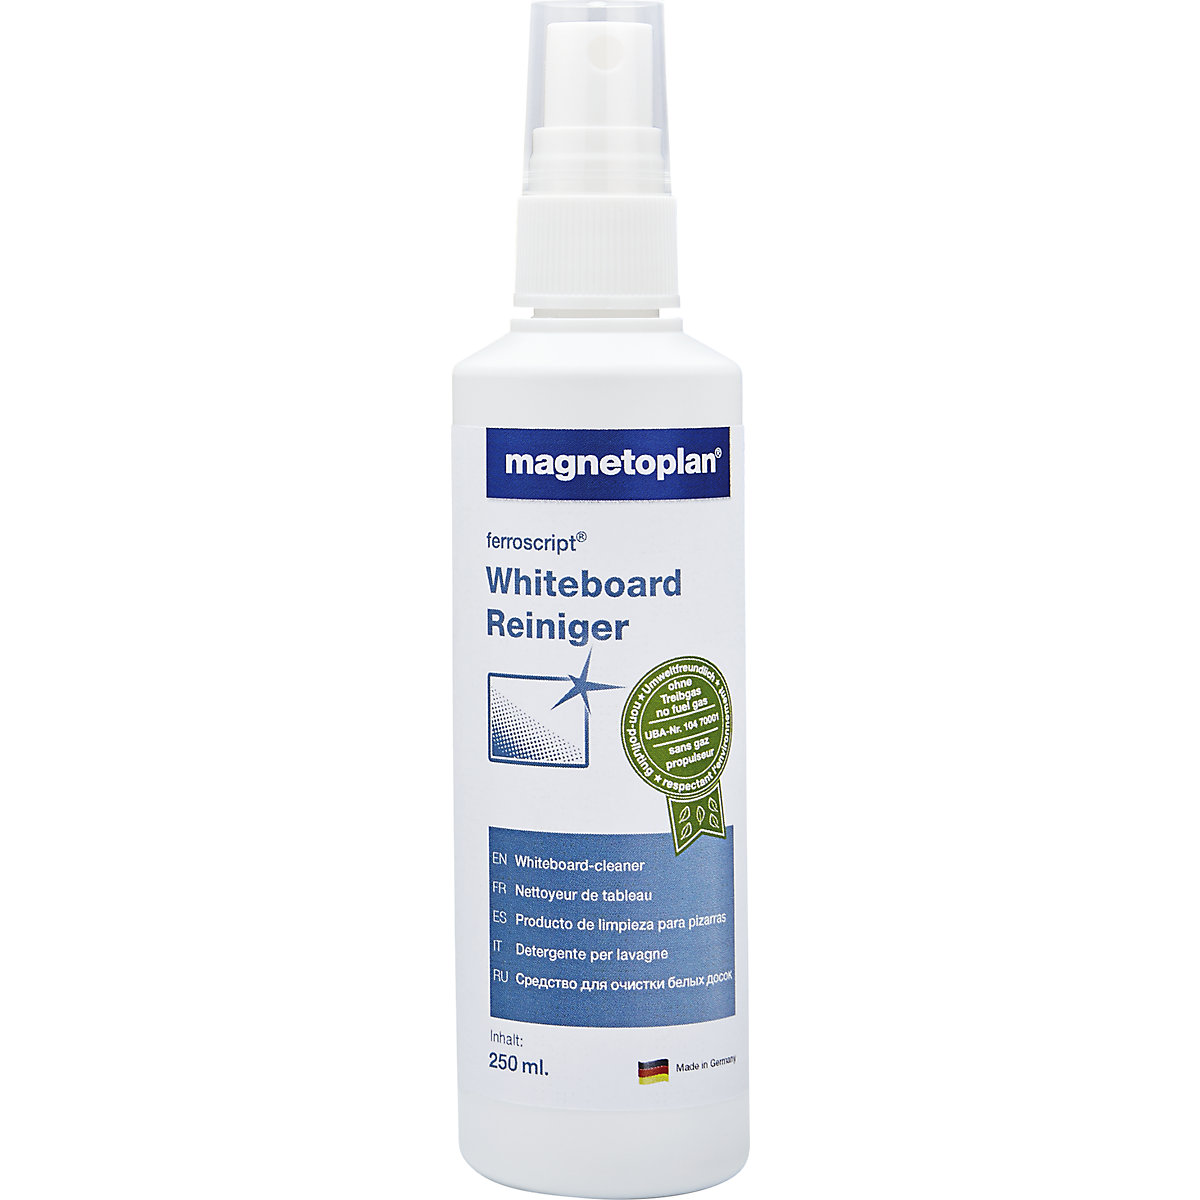 ferroscript® Whiteboard-Reiniger magnetoplan